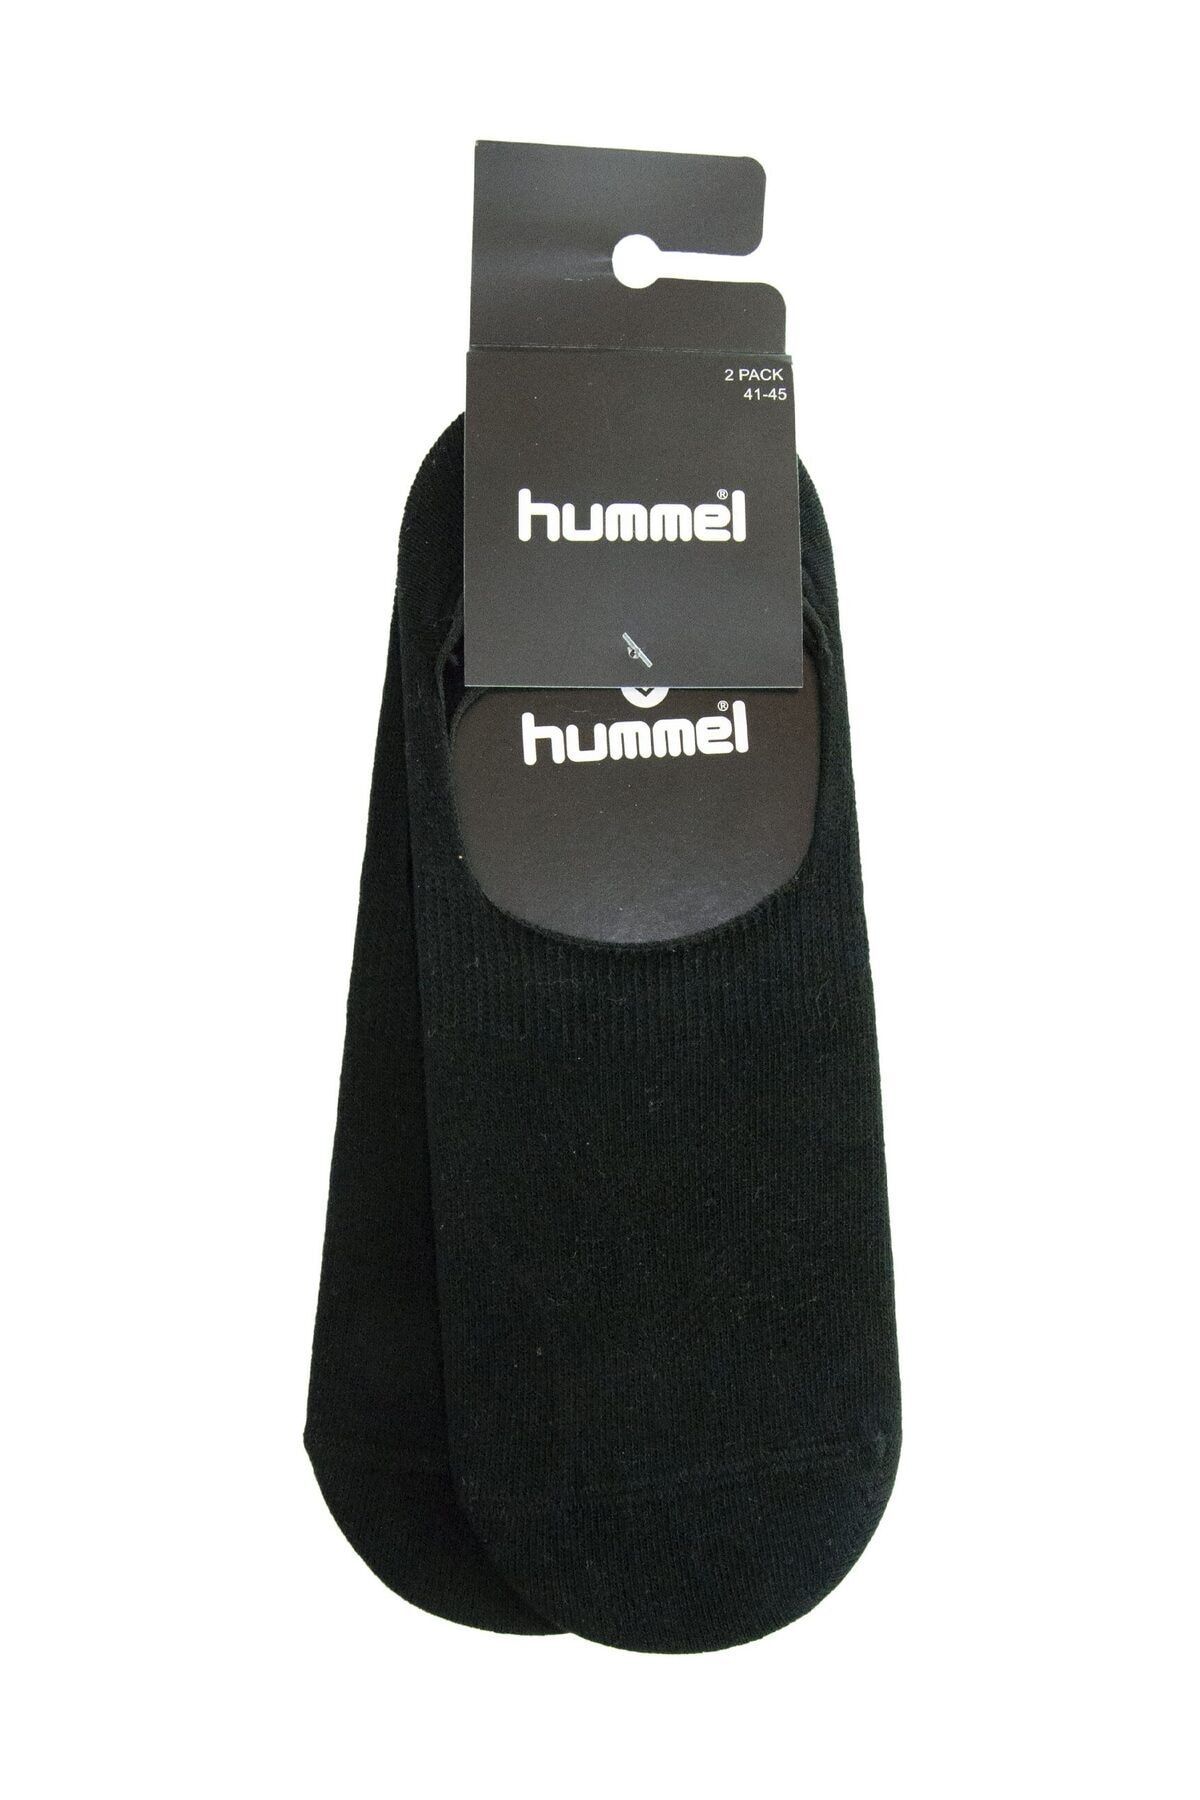 hummel Unisex Çorap - Hmlmini Low Size Socks